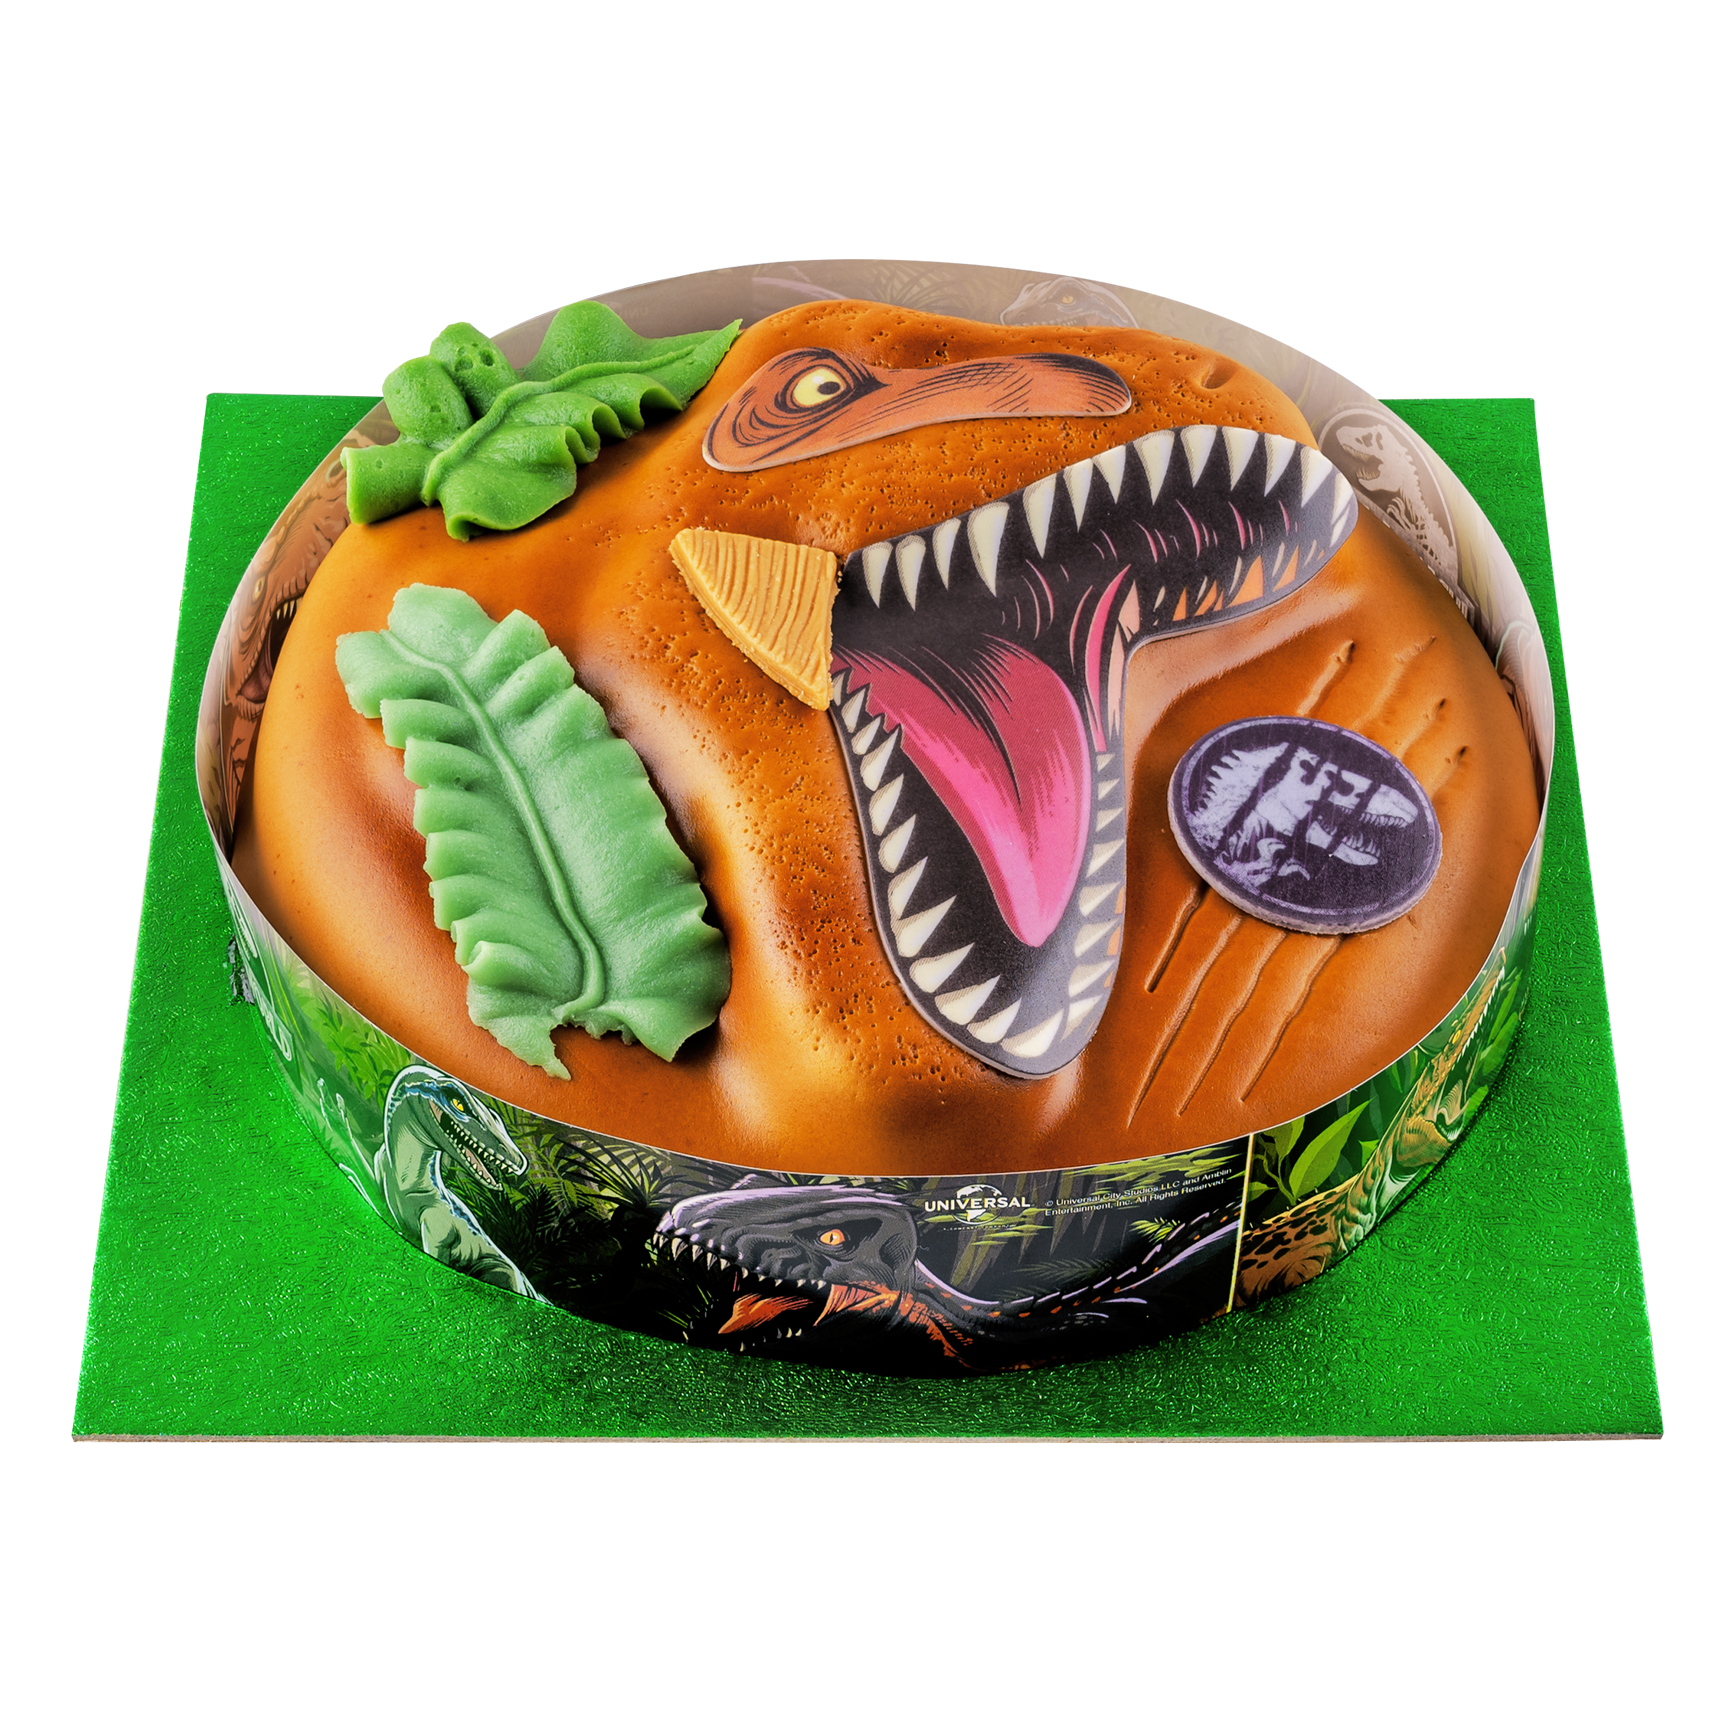 Commander votre Gâteau d'anniversaire Dinosaure en ligne